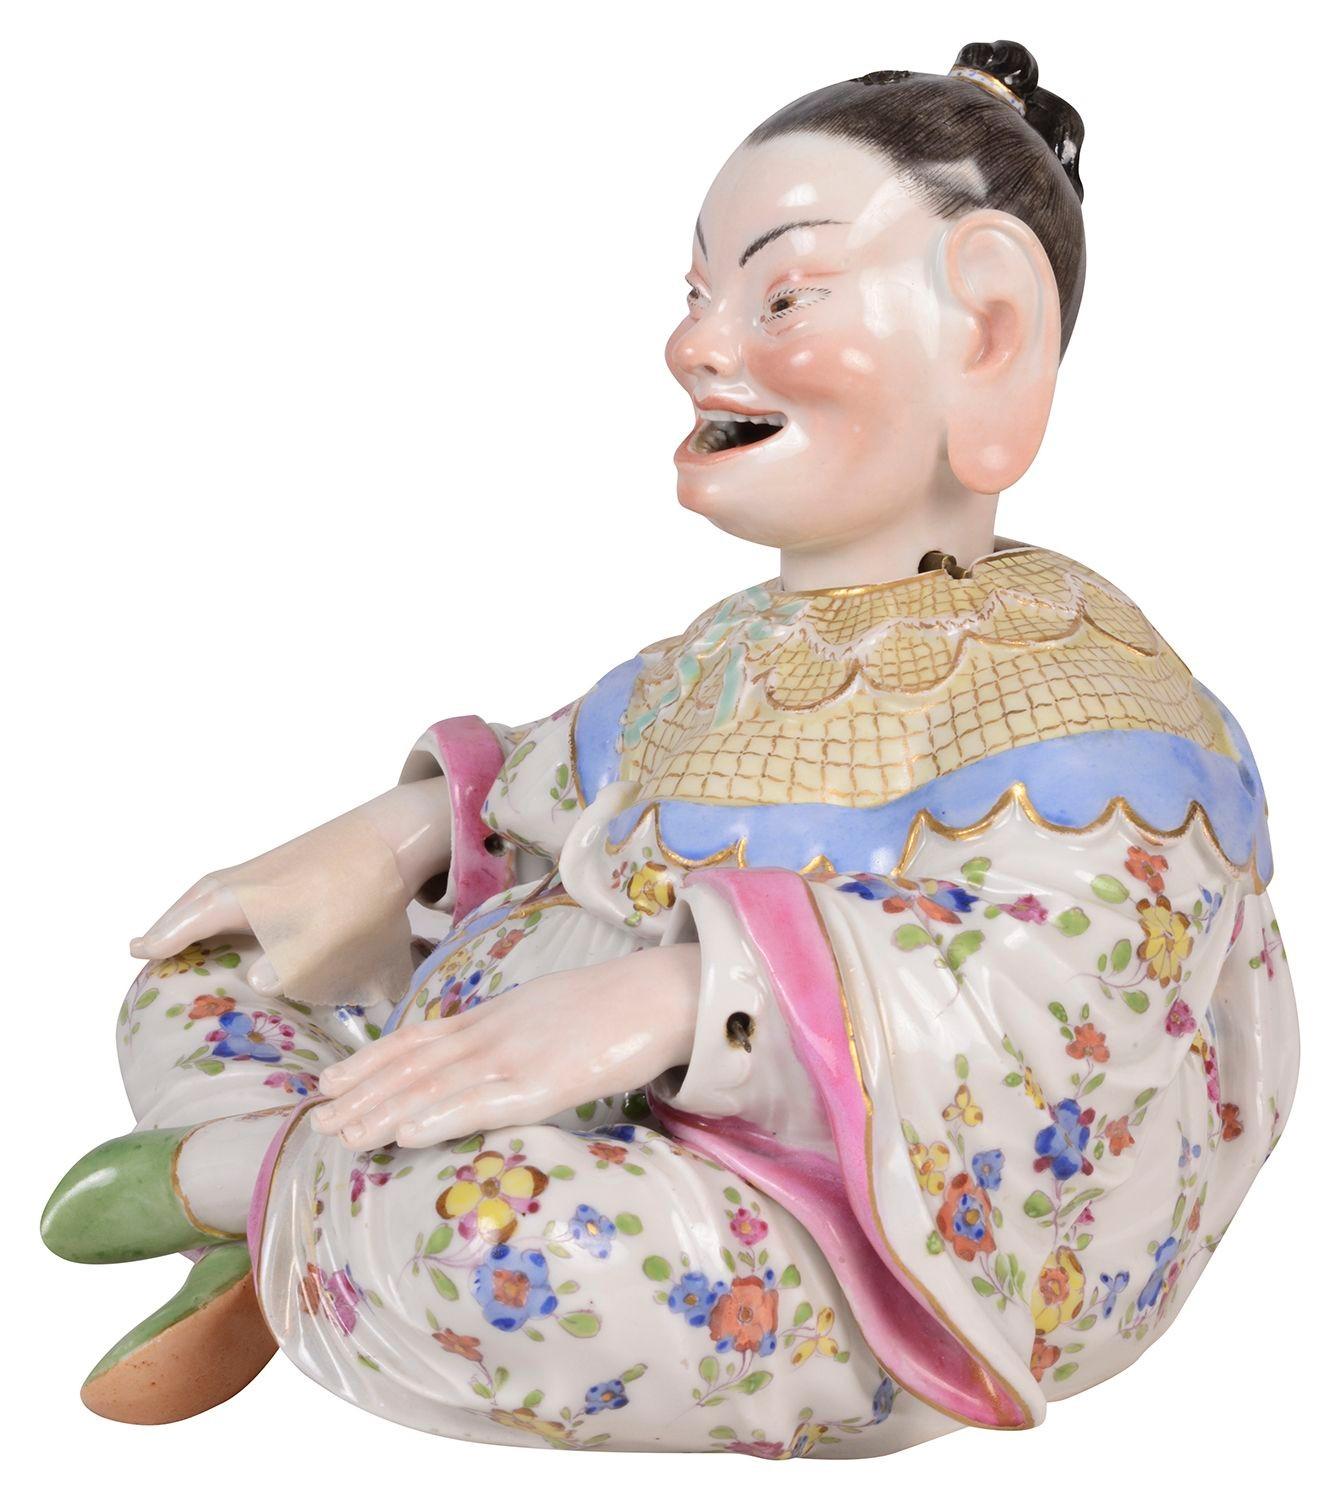 Ein feines Paar Meissener Porzellan-Wackelpagoden aus dem späten 19. Jahrhundert, jeweils mit wunderbar kräftigen Farben, die Köpfe, Zungen und Hände bewegen. 
Die Manufaktur Meissen in Deutschland wurde 1709 gegründet und war der erste Hersteller